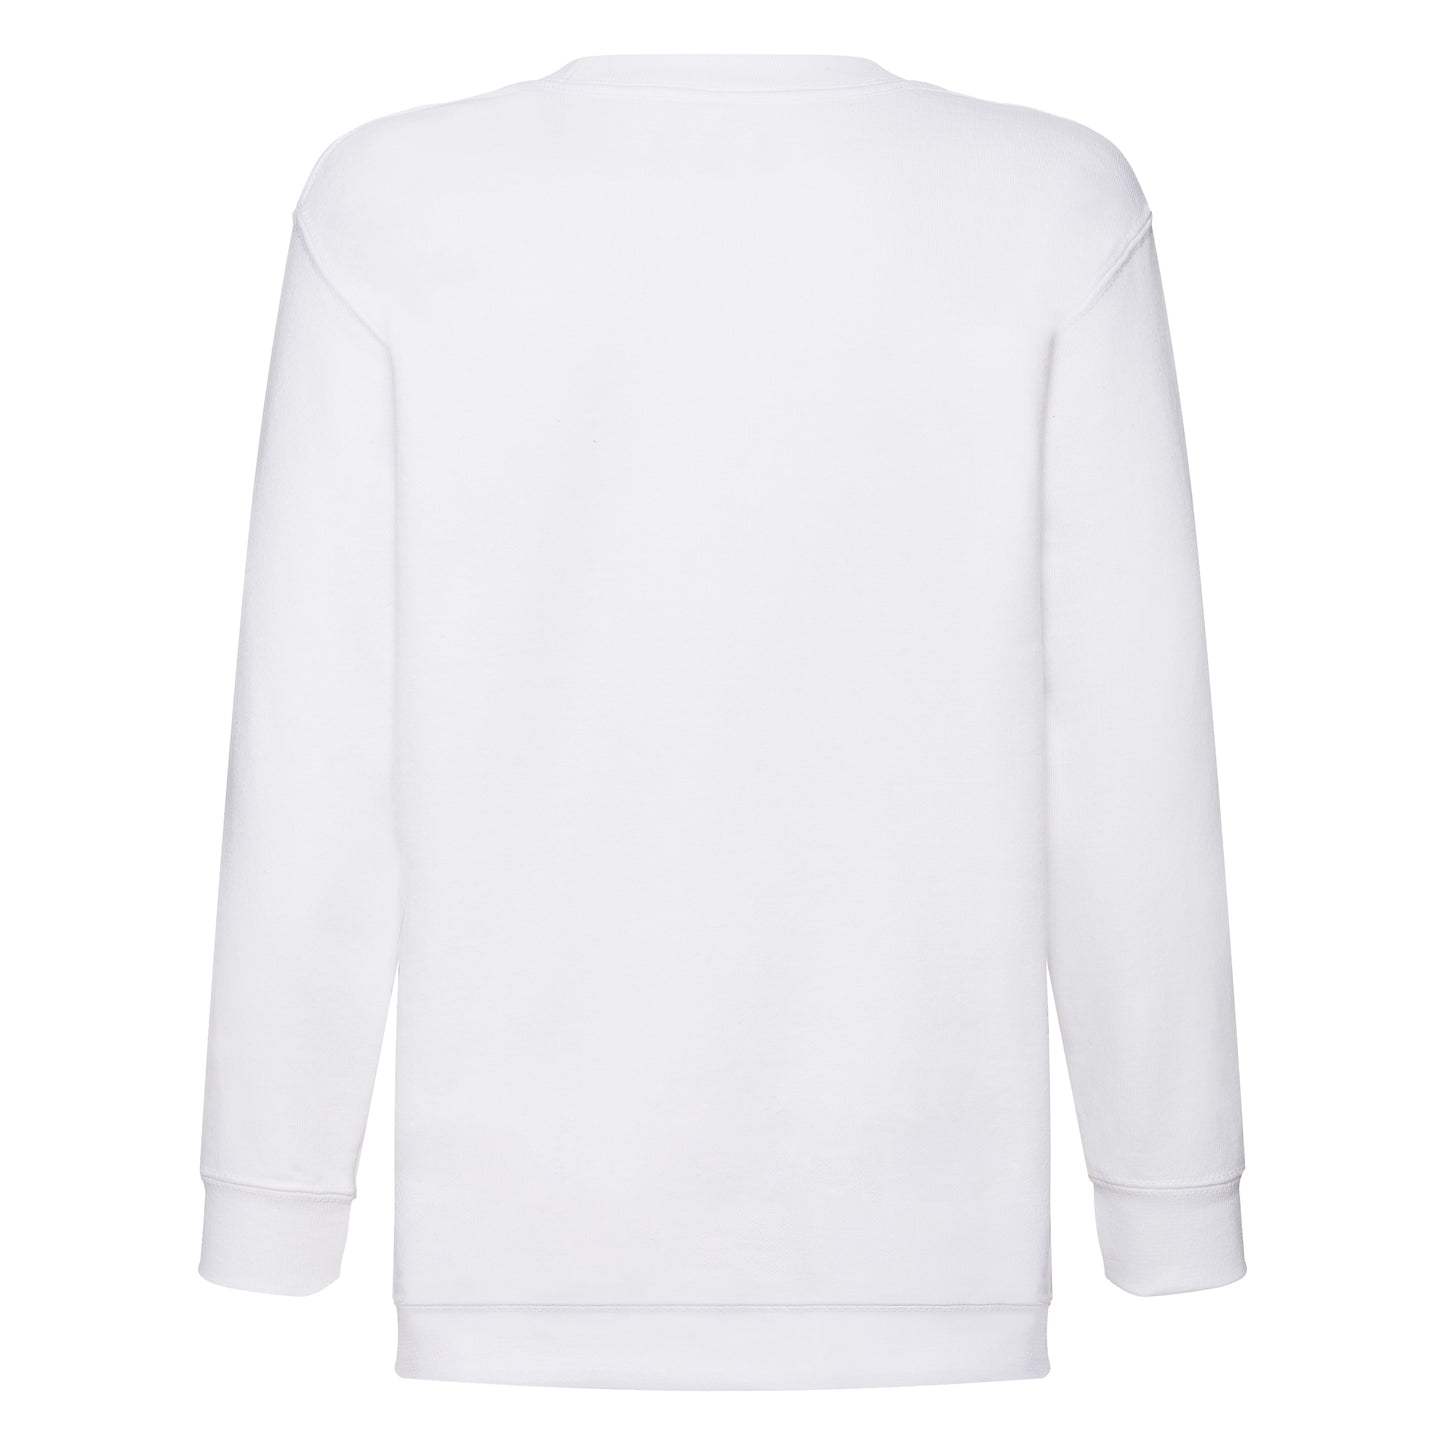 Sweat shirt enfant 80% coton et 20% polyester 280gr/m2 CLASSIC SET-IN-SWEAT